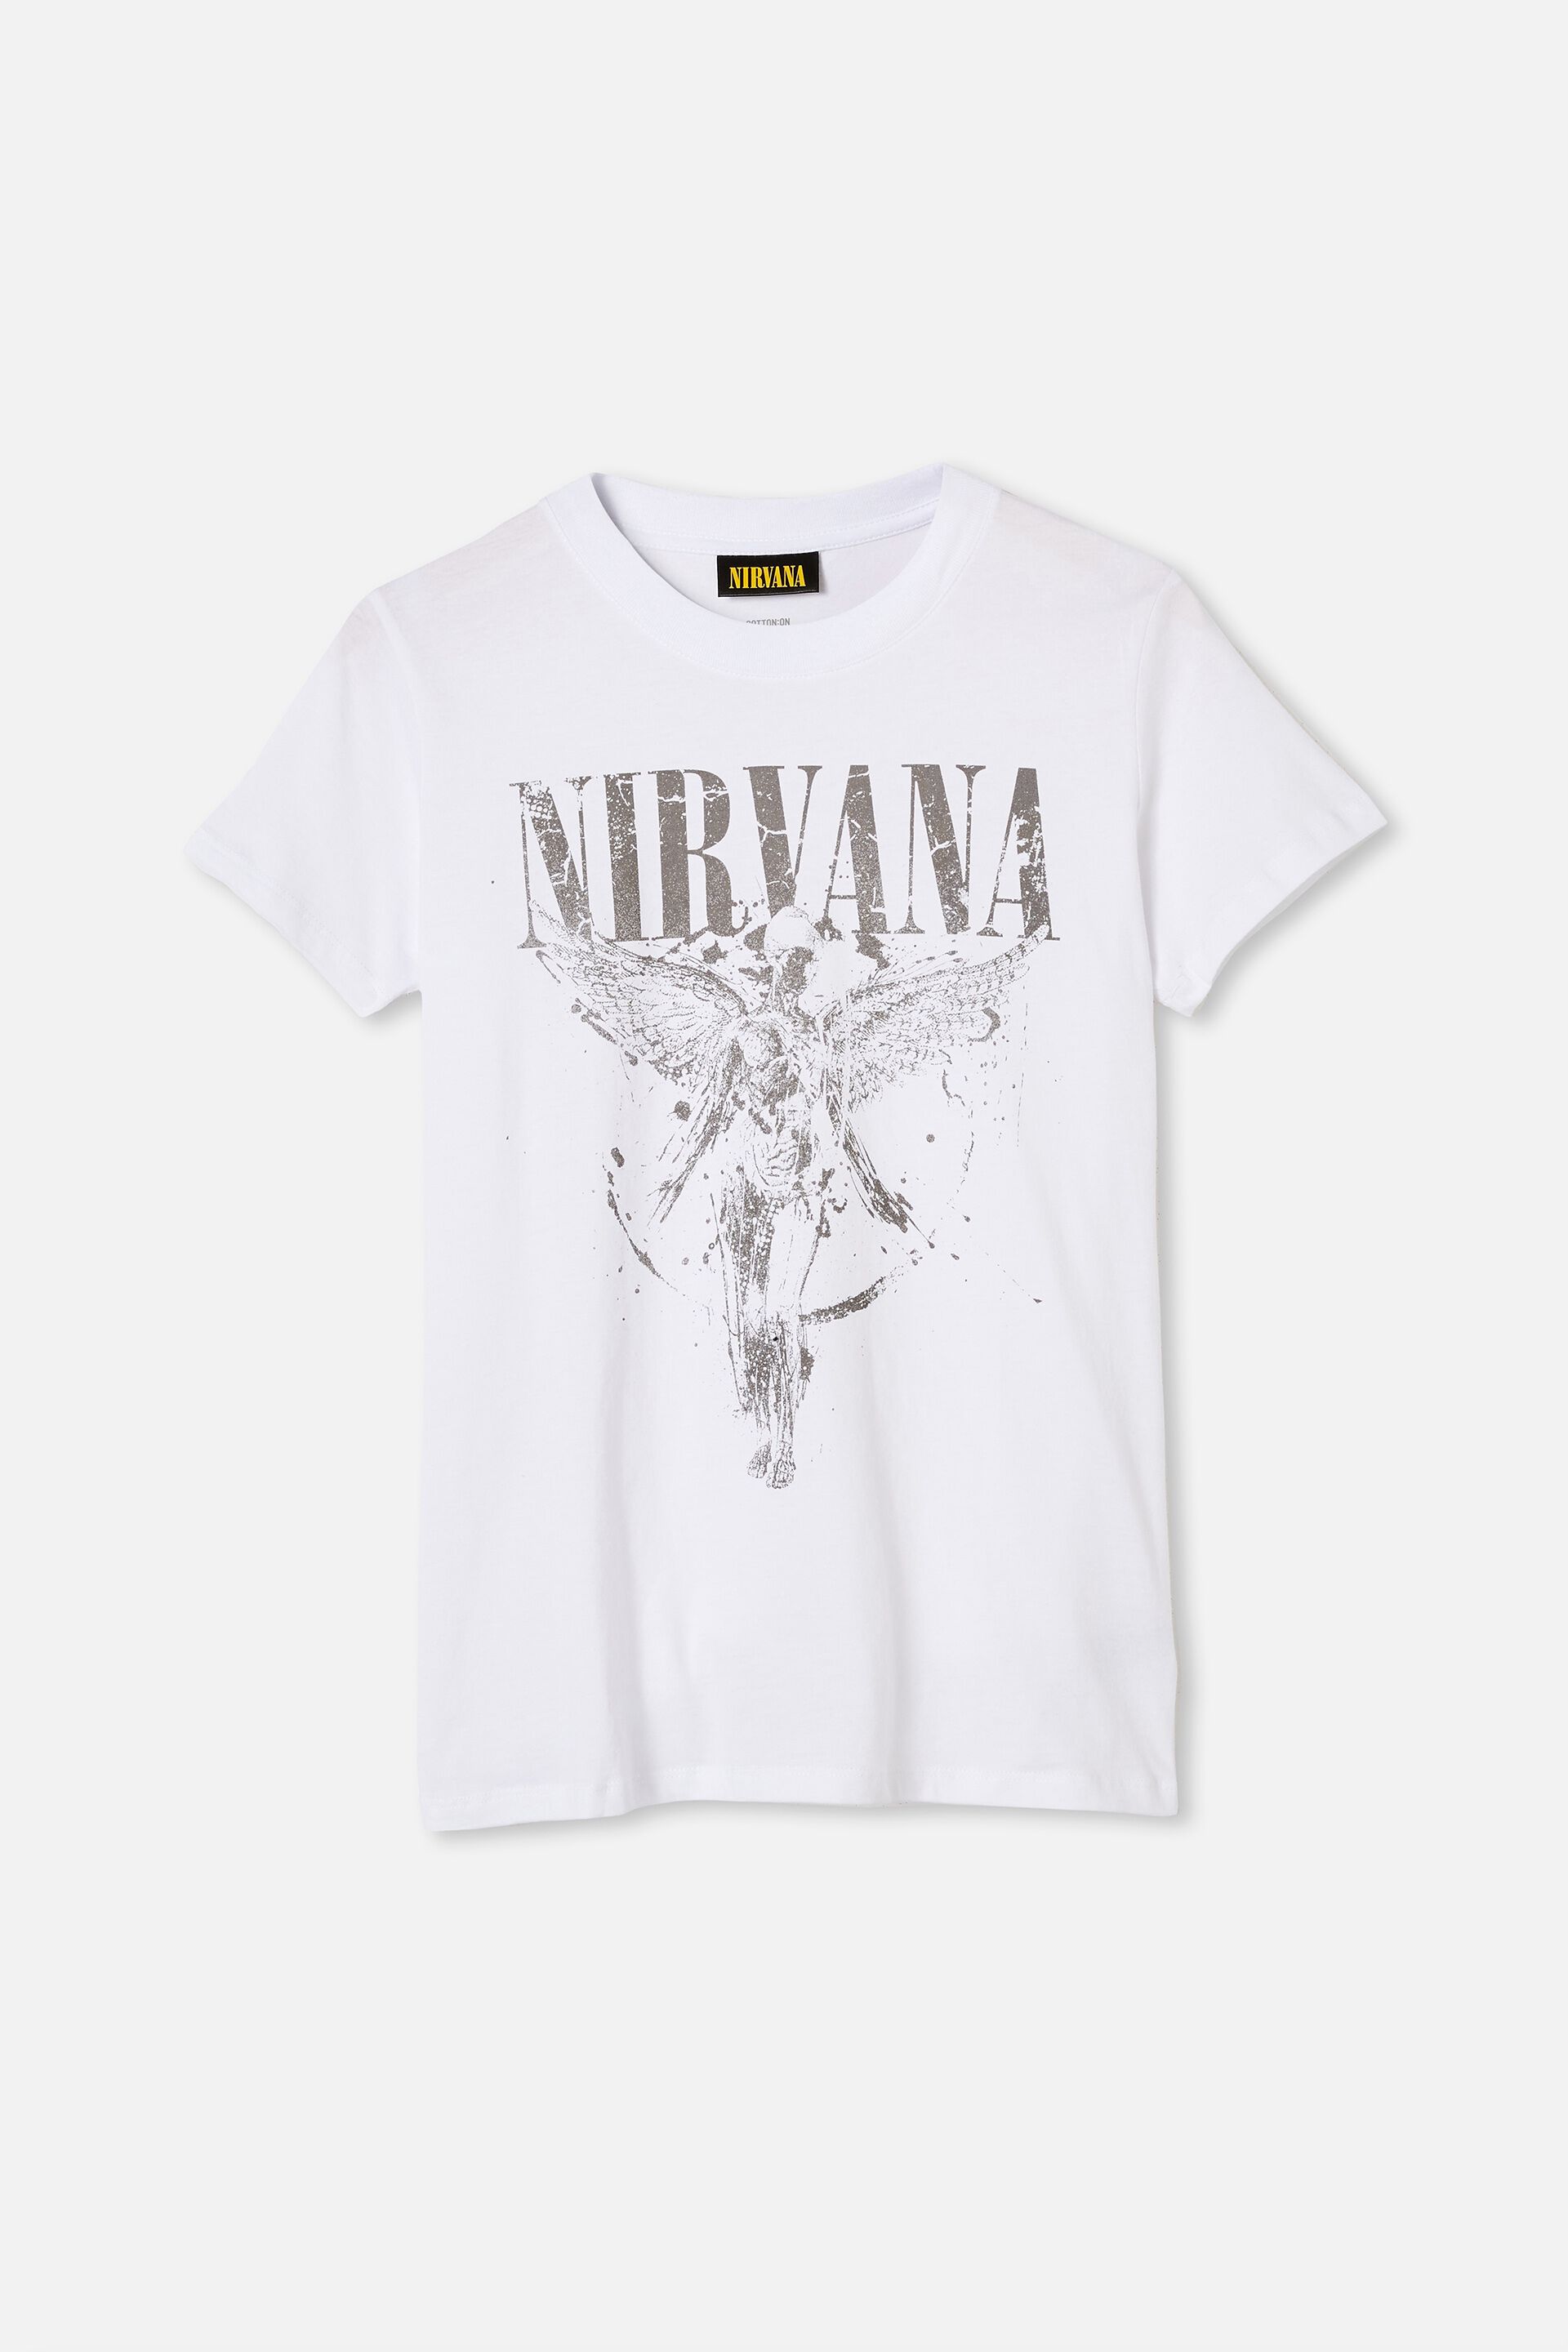 nirvana angel shirt